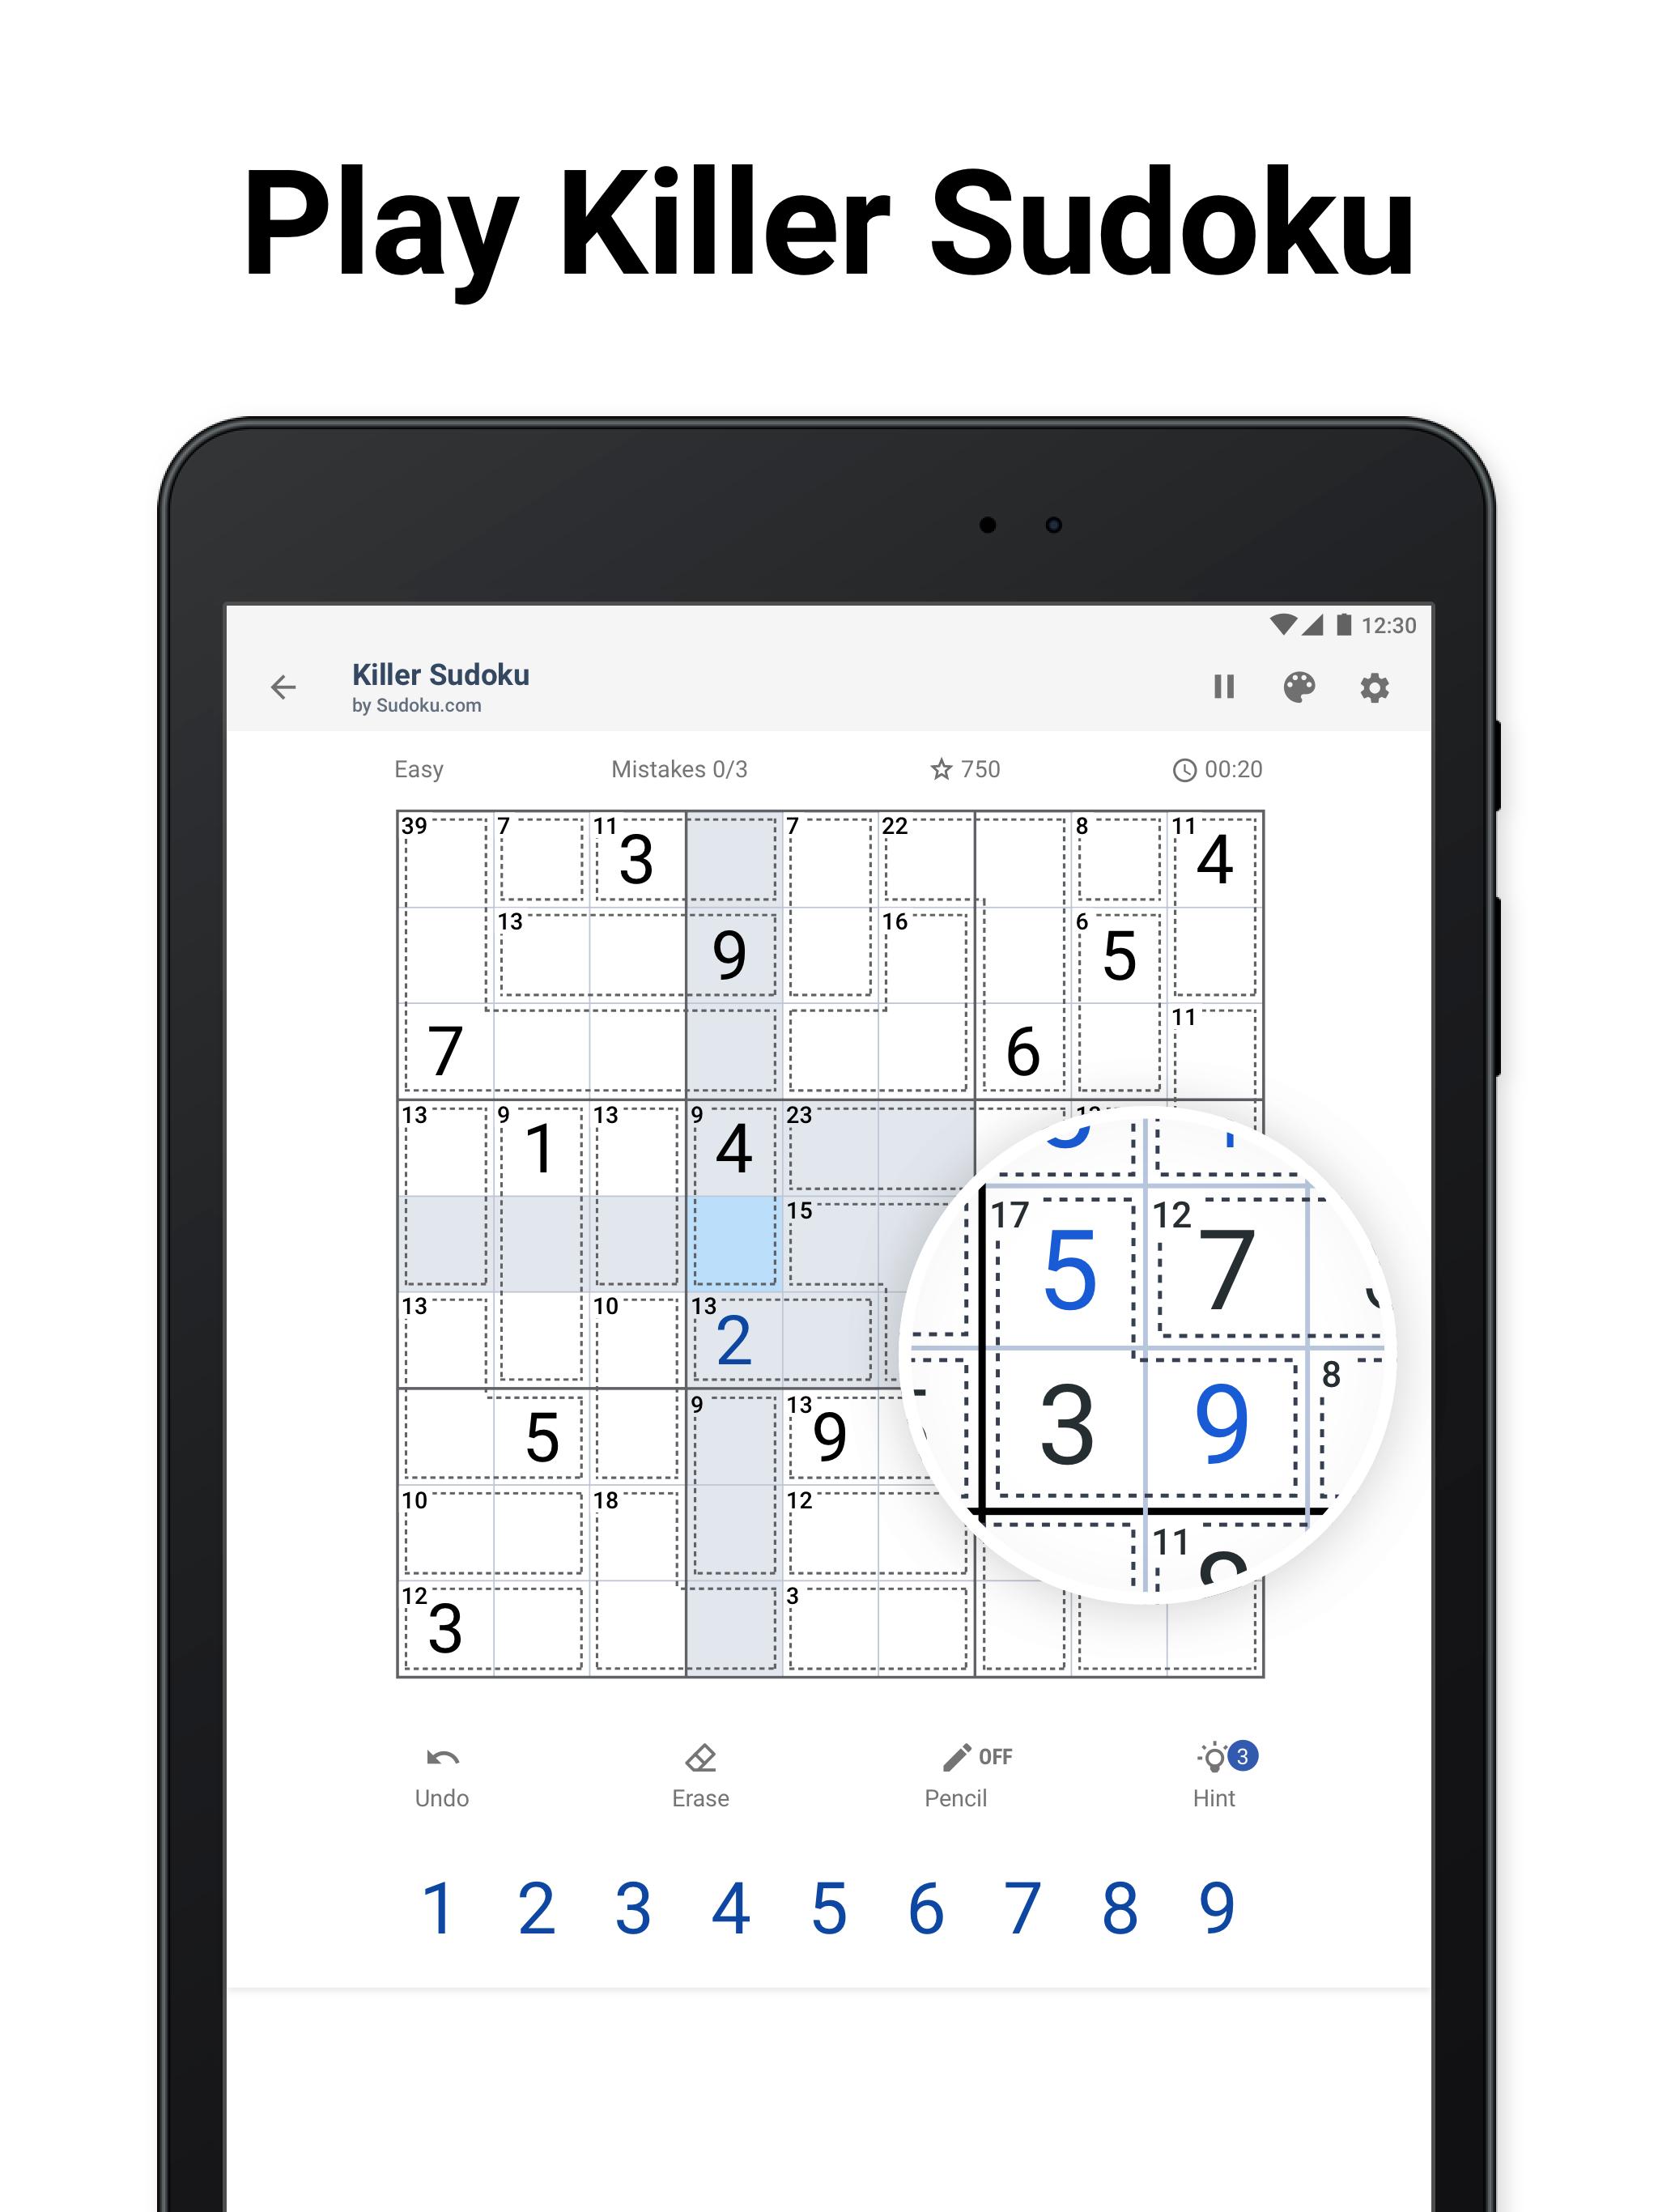 Killer Sudoku by Sudoku.com - Free Logic Puzzles 1.2.1 Screenshot 17